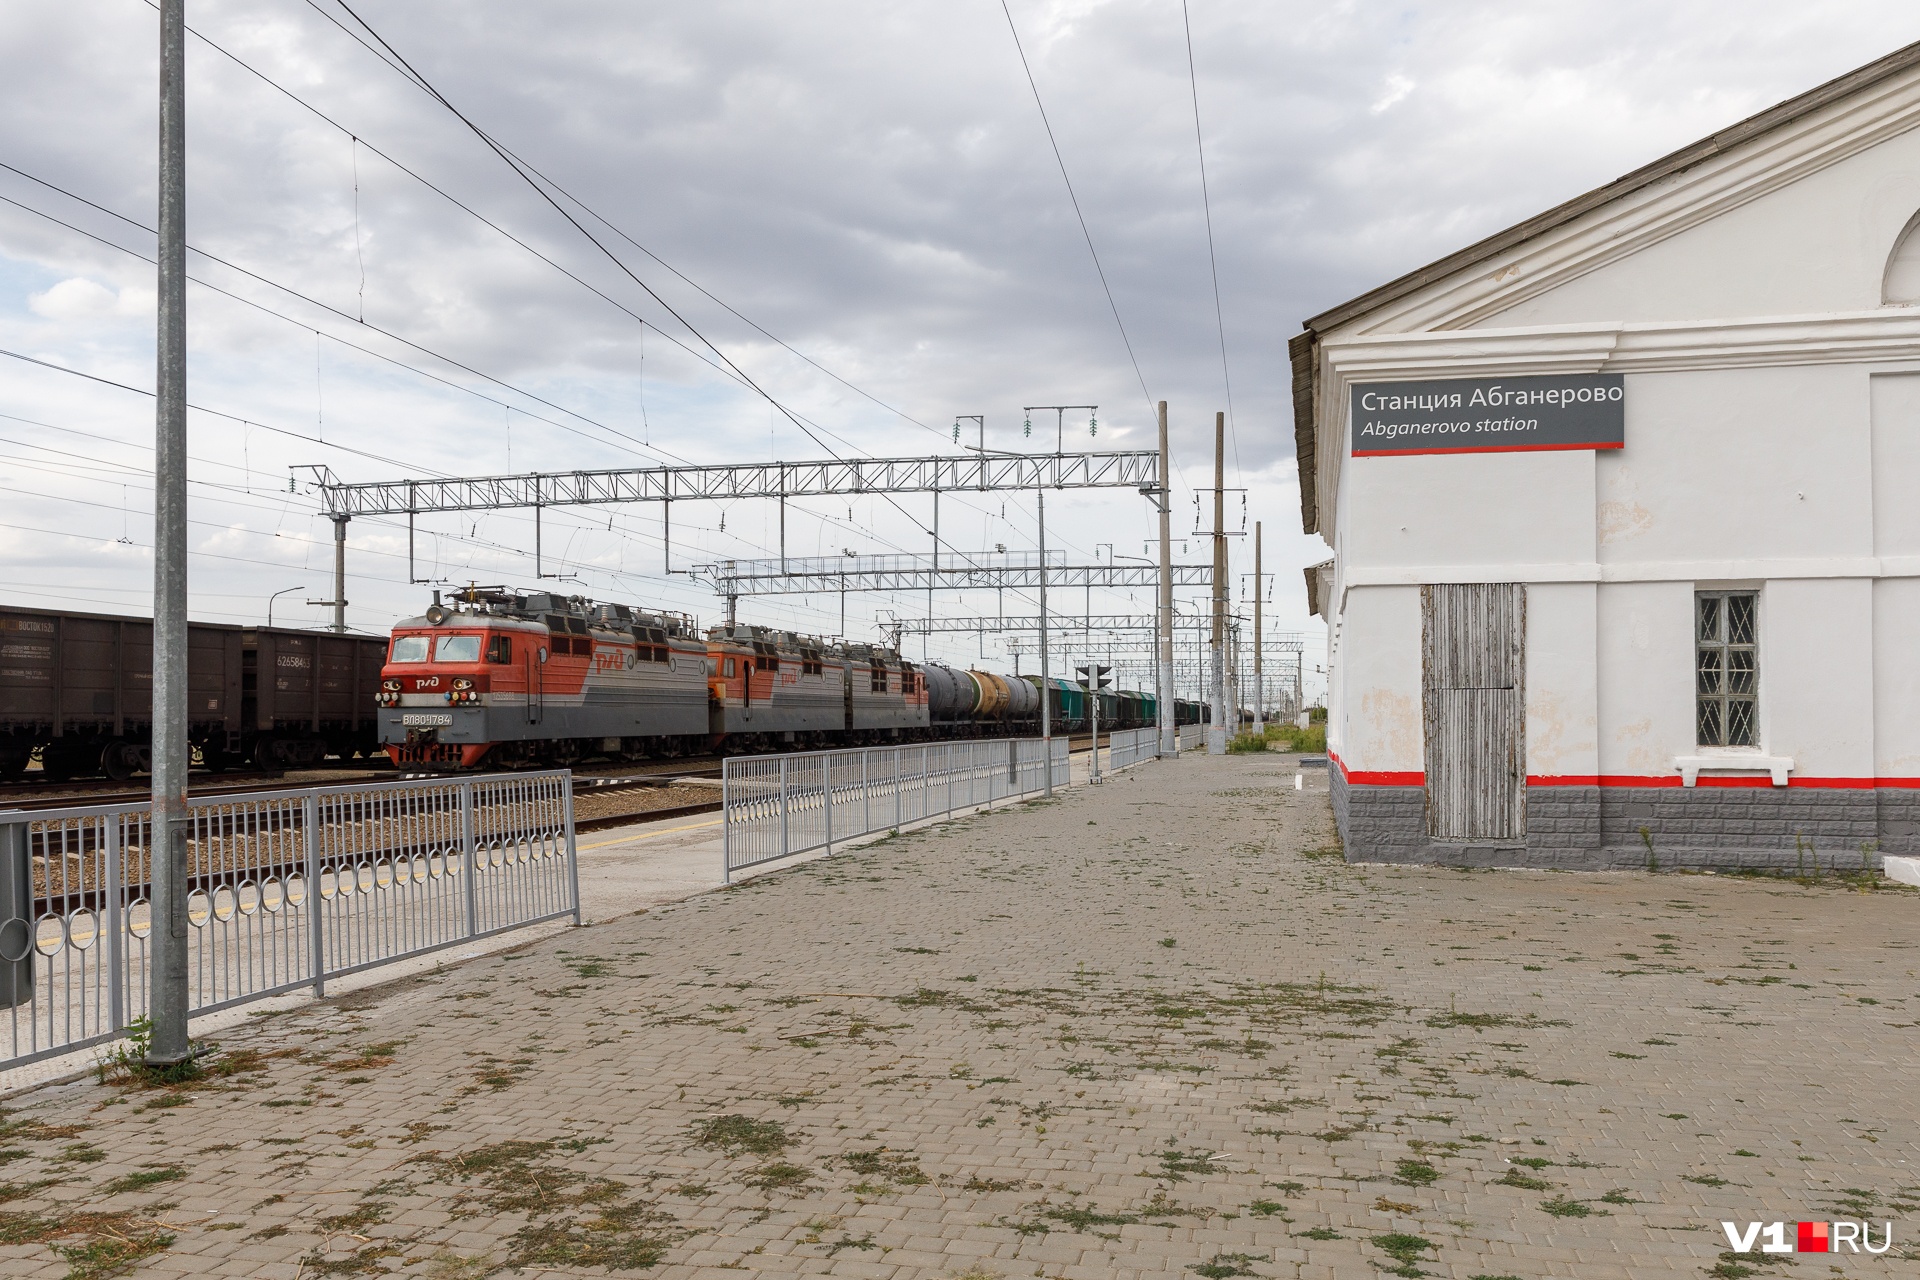 Семья Волченко живет в небольшом поселке у железной дороги — станция Абганерово